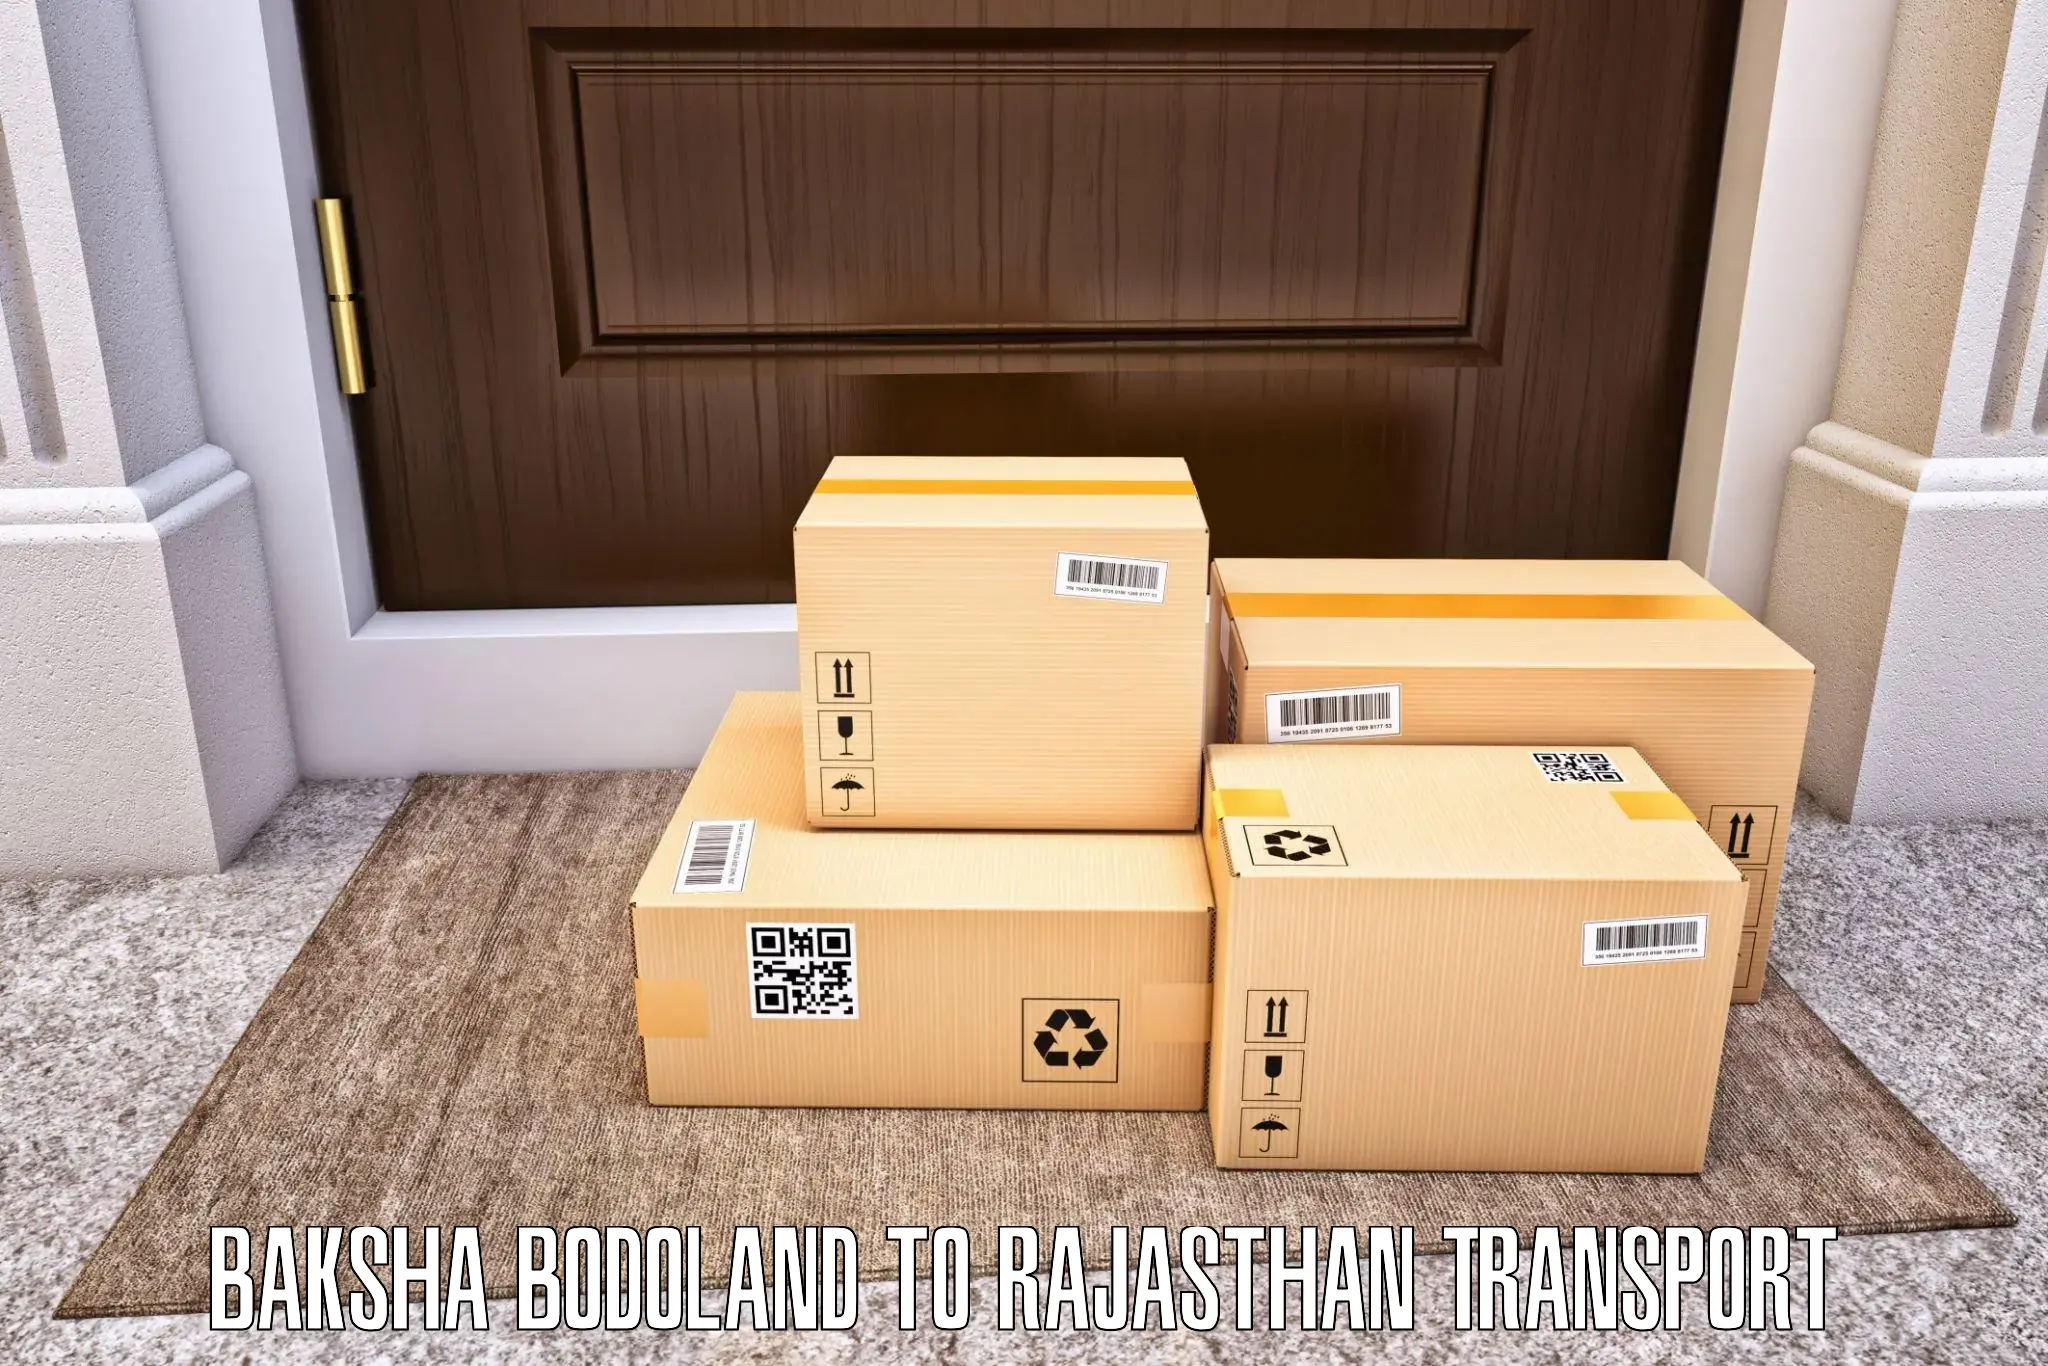 Door to door transport services Baksha Bodoland to Rajasthan